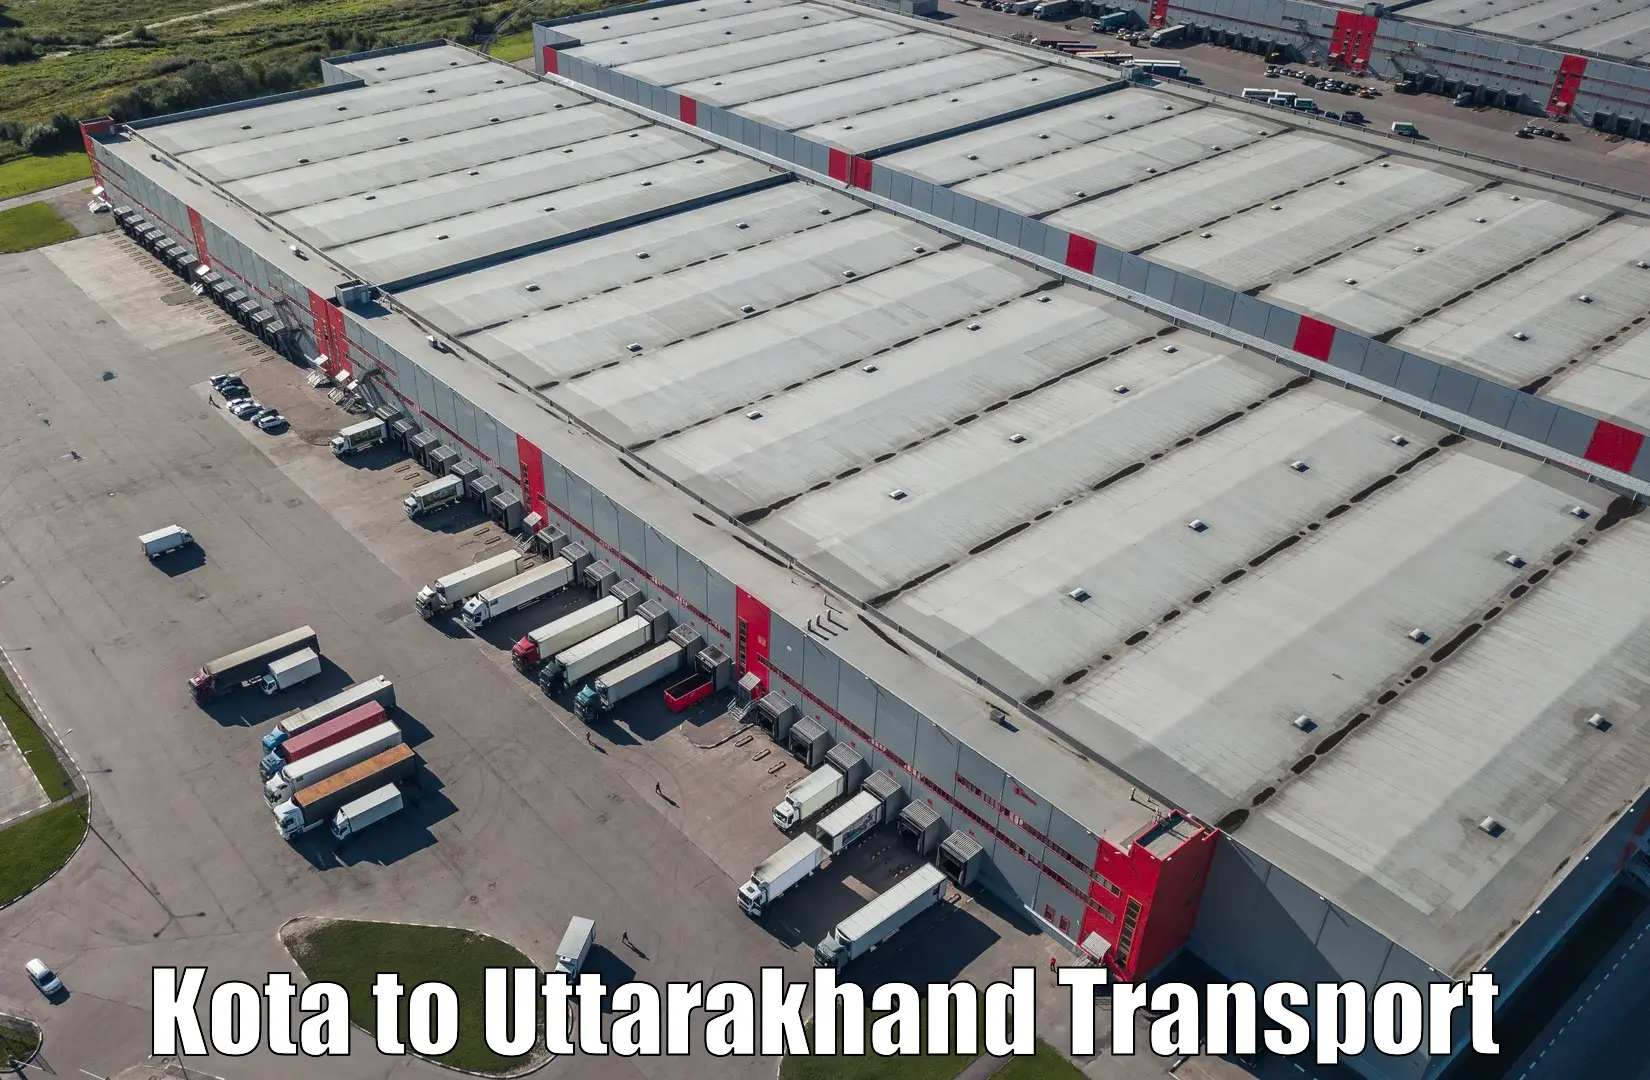 Furniture transport service Kota to Ramnagar